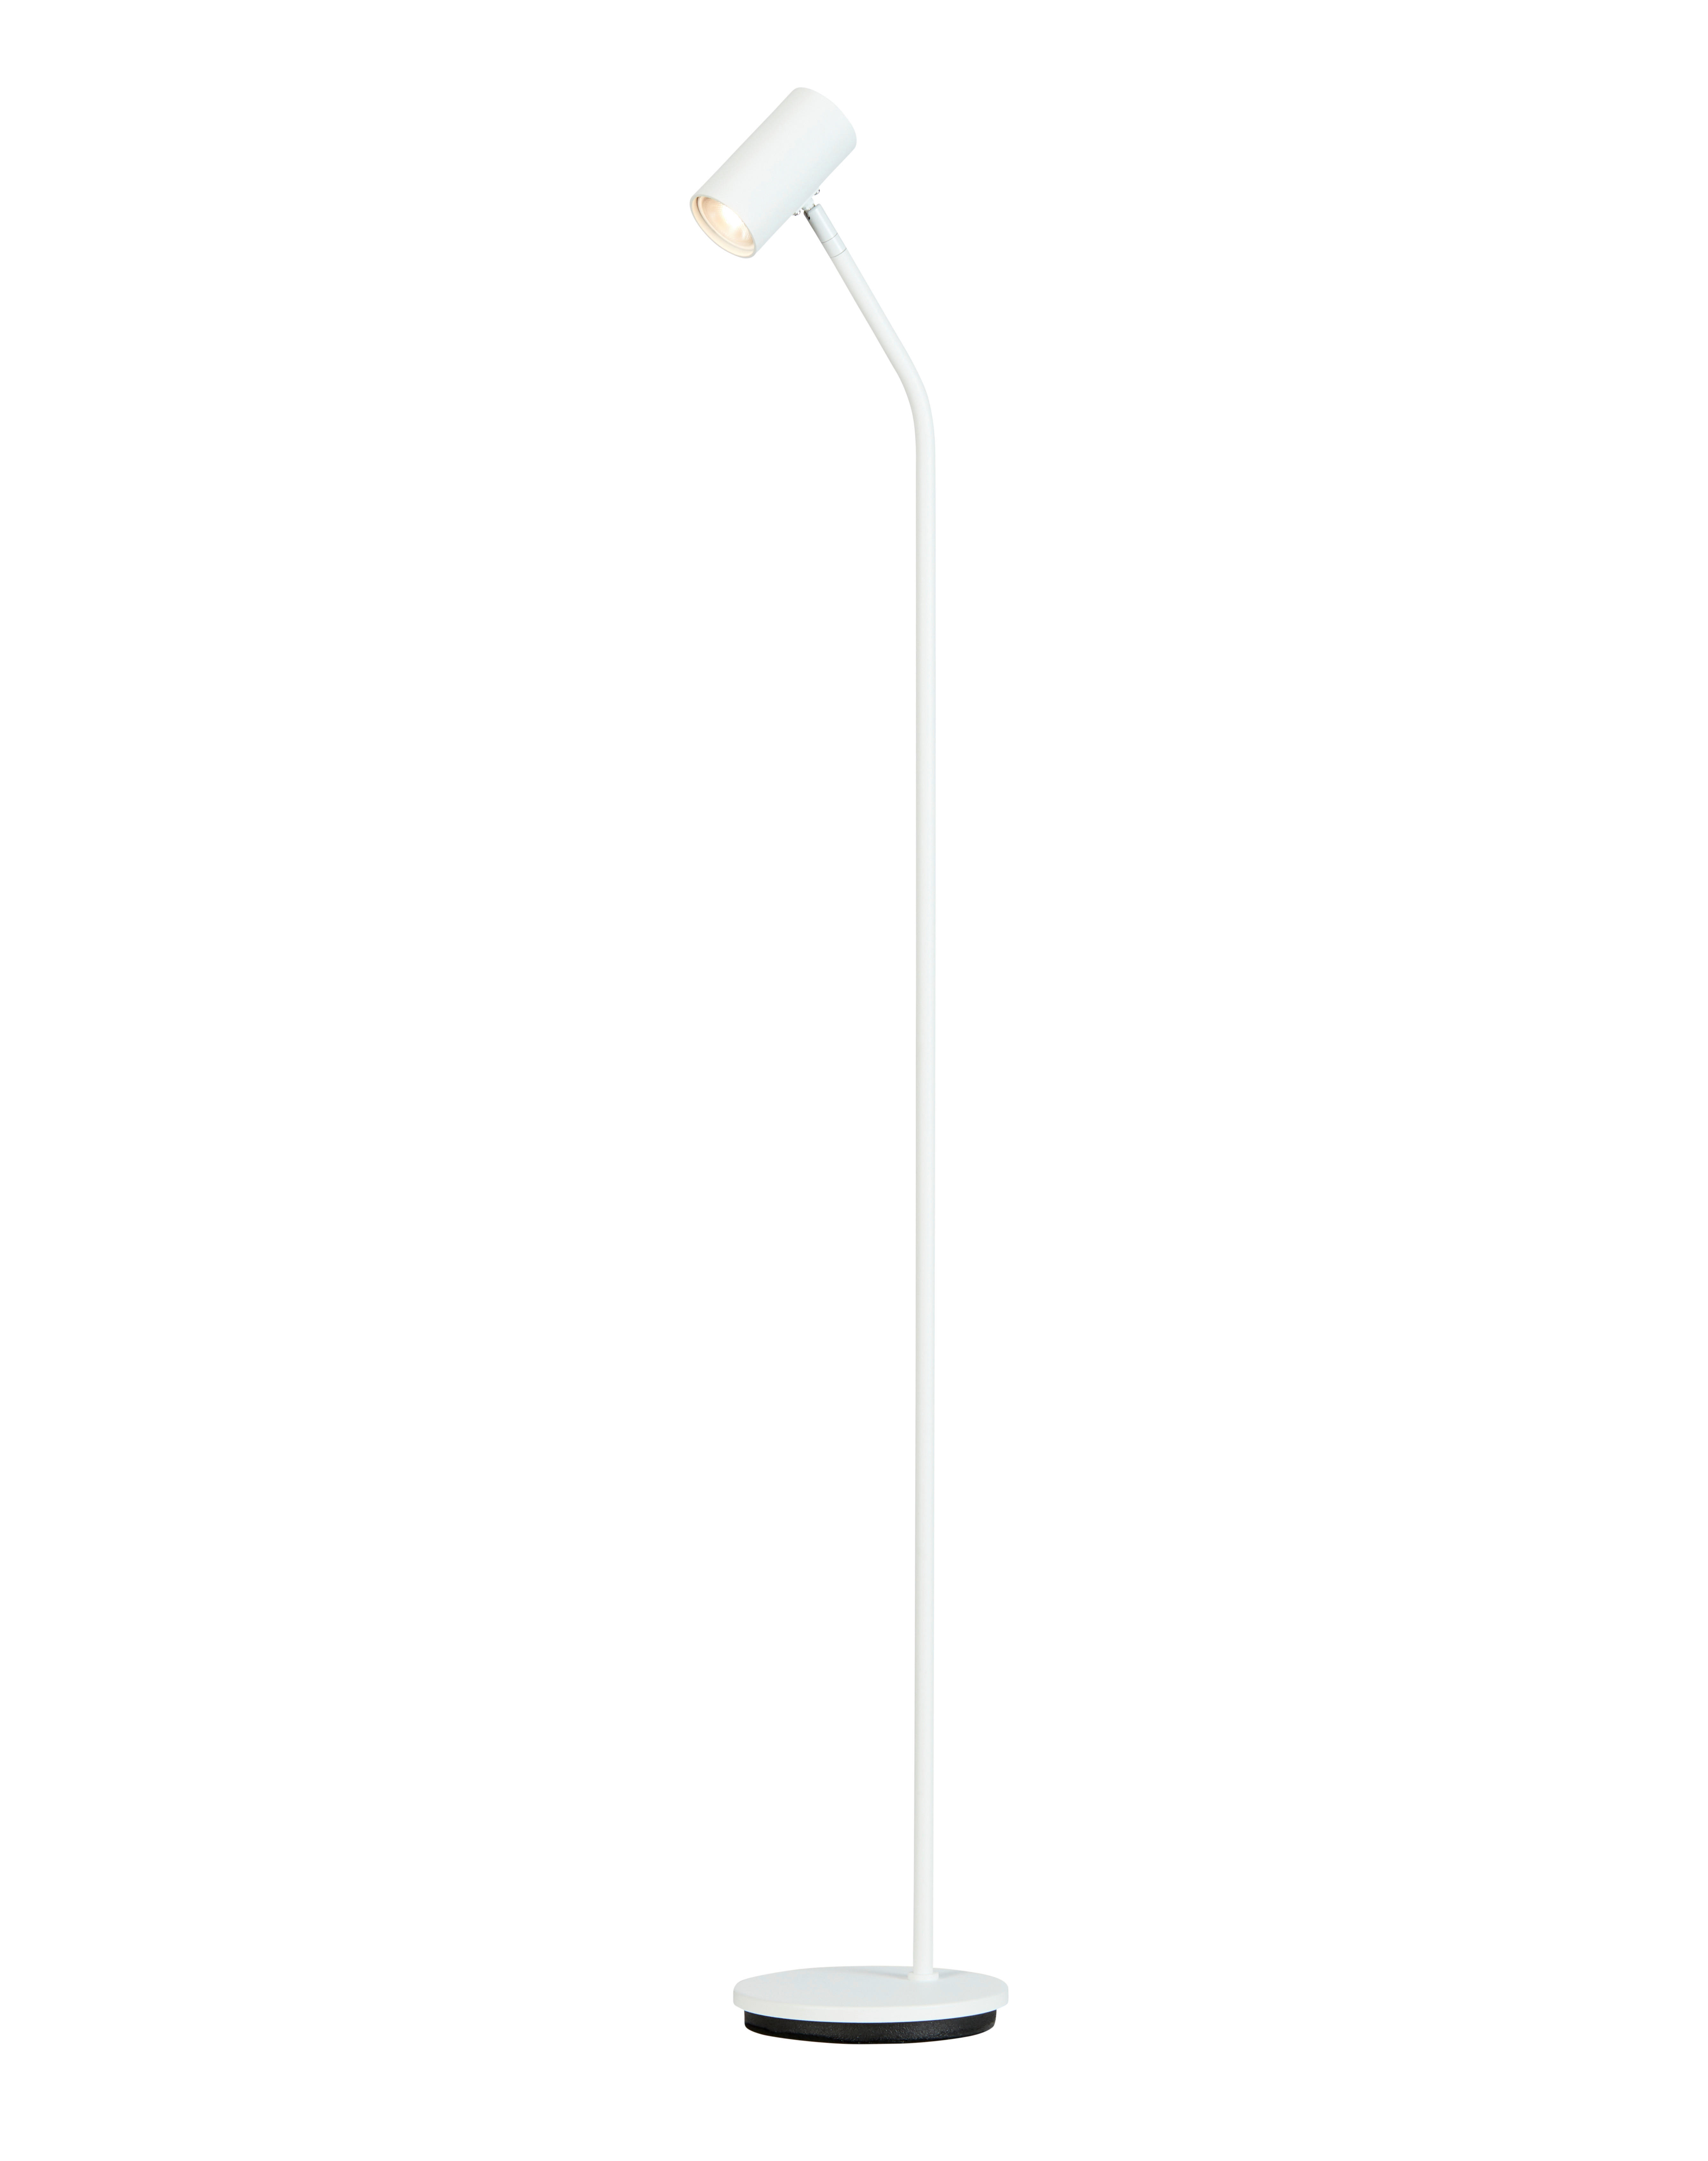 STEHLEUCHTE 17,8/126,5 cm    - Weiß, Design, Metall (17,8/126,5cm) - Belid